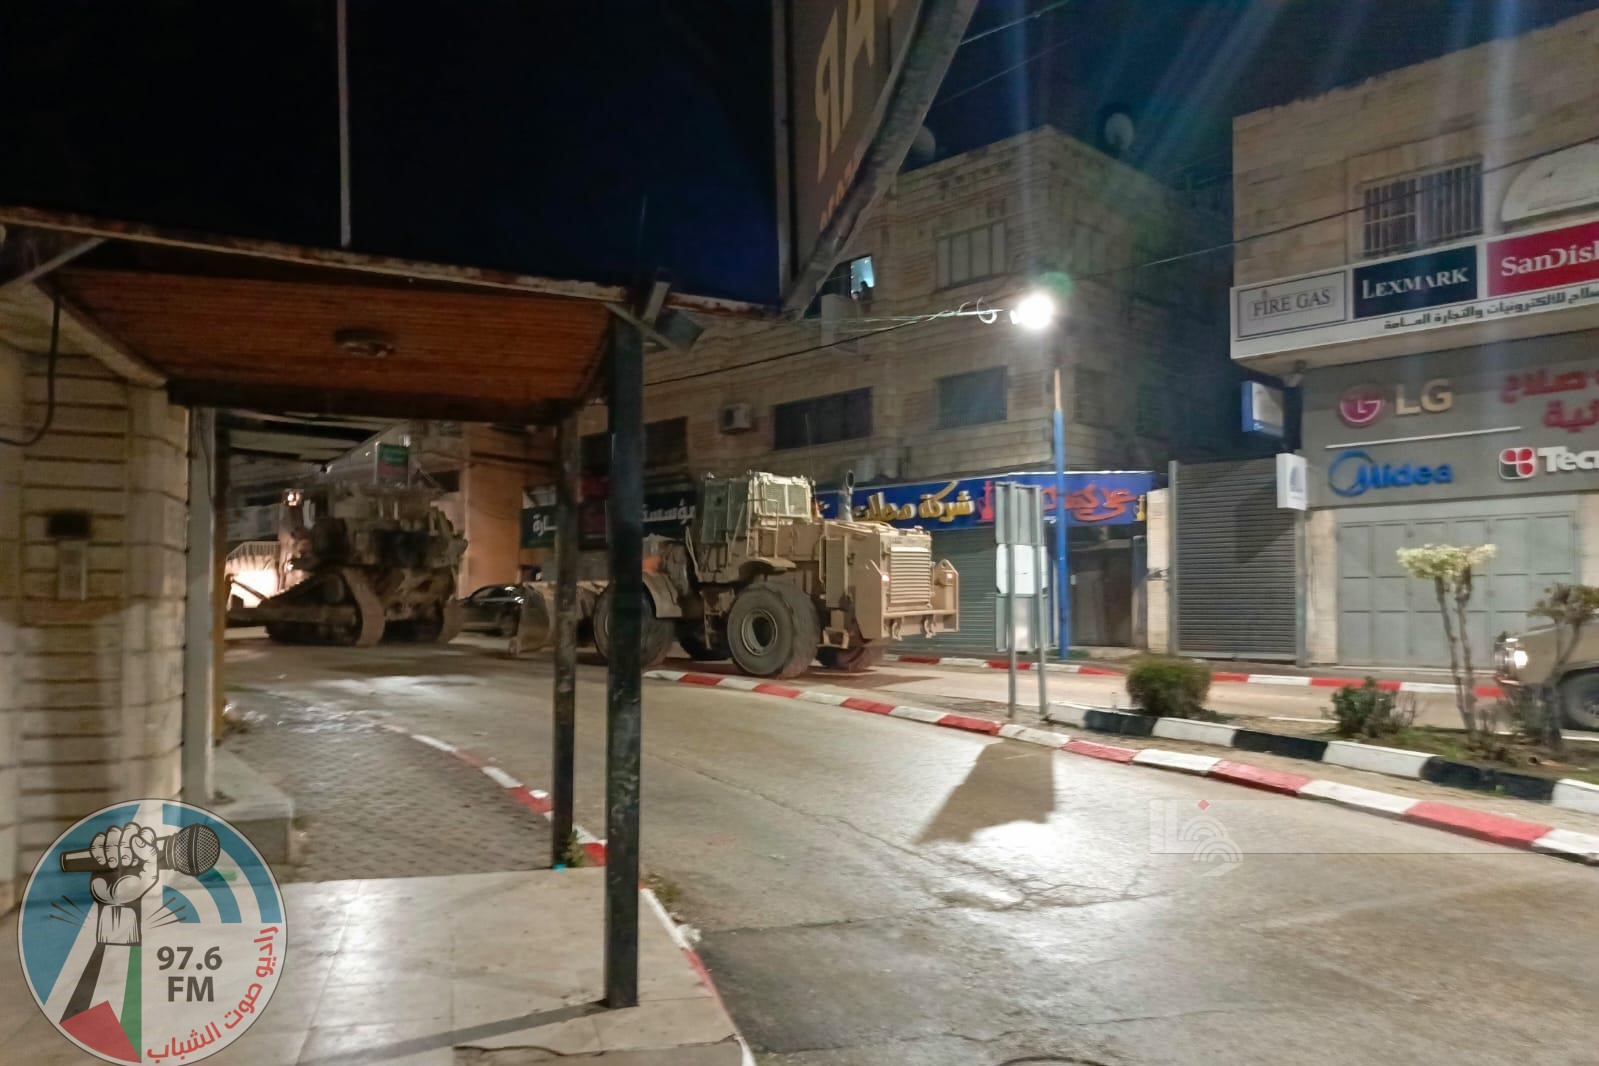 قوات الاحتلال الإسرائيلي تقتحم مدينة طولكرم